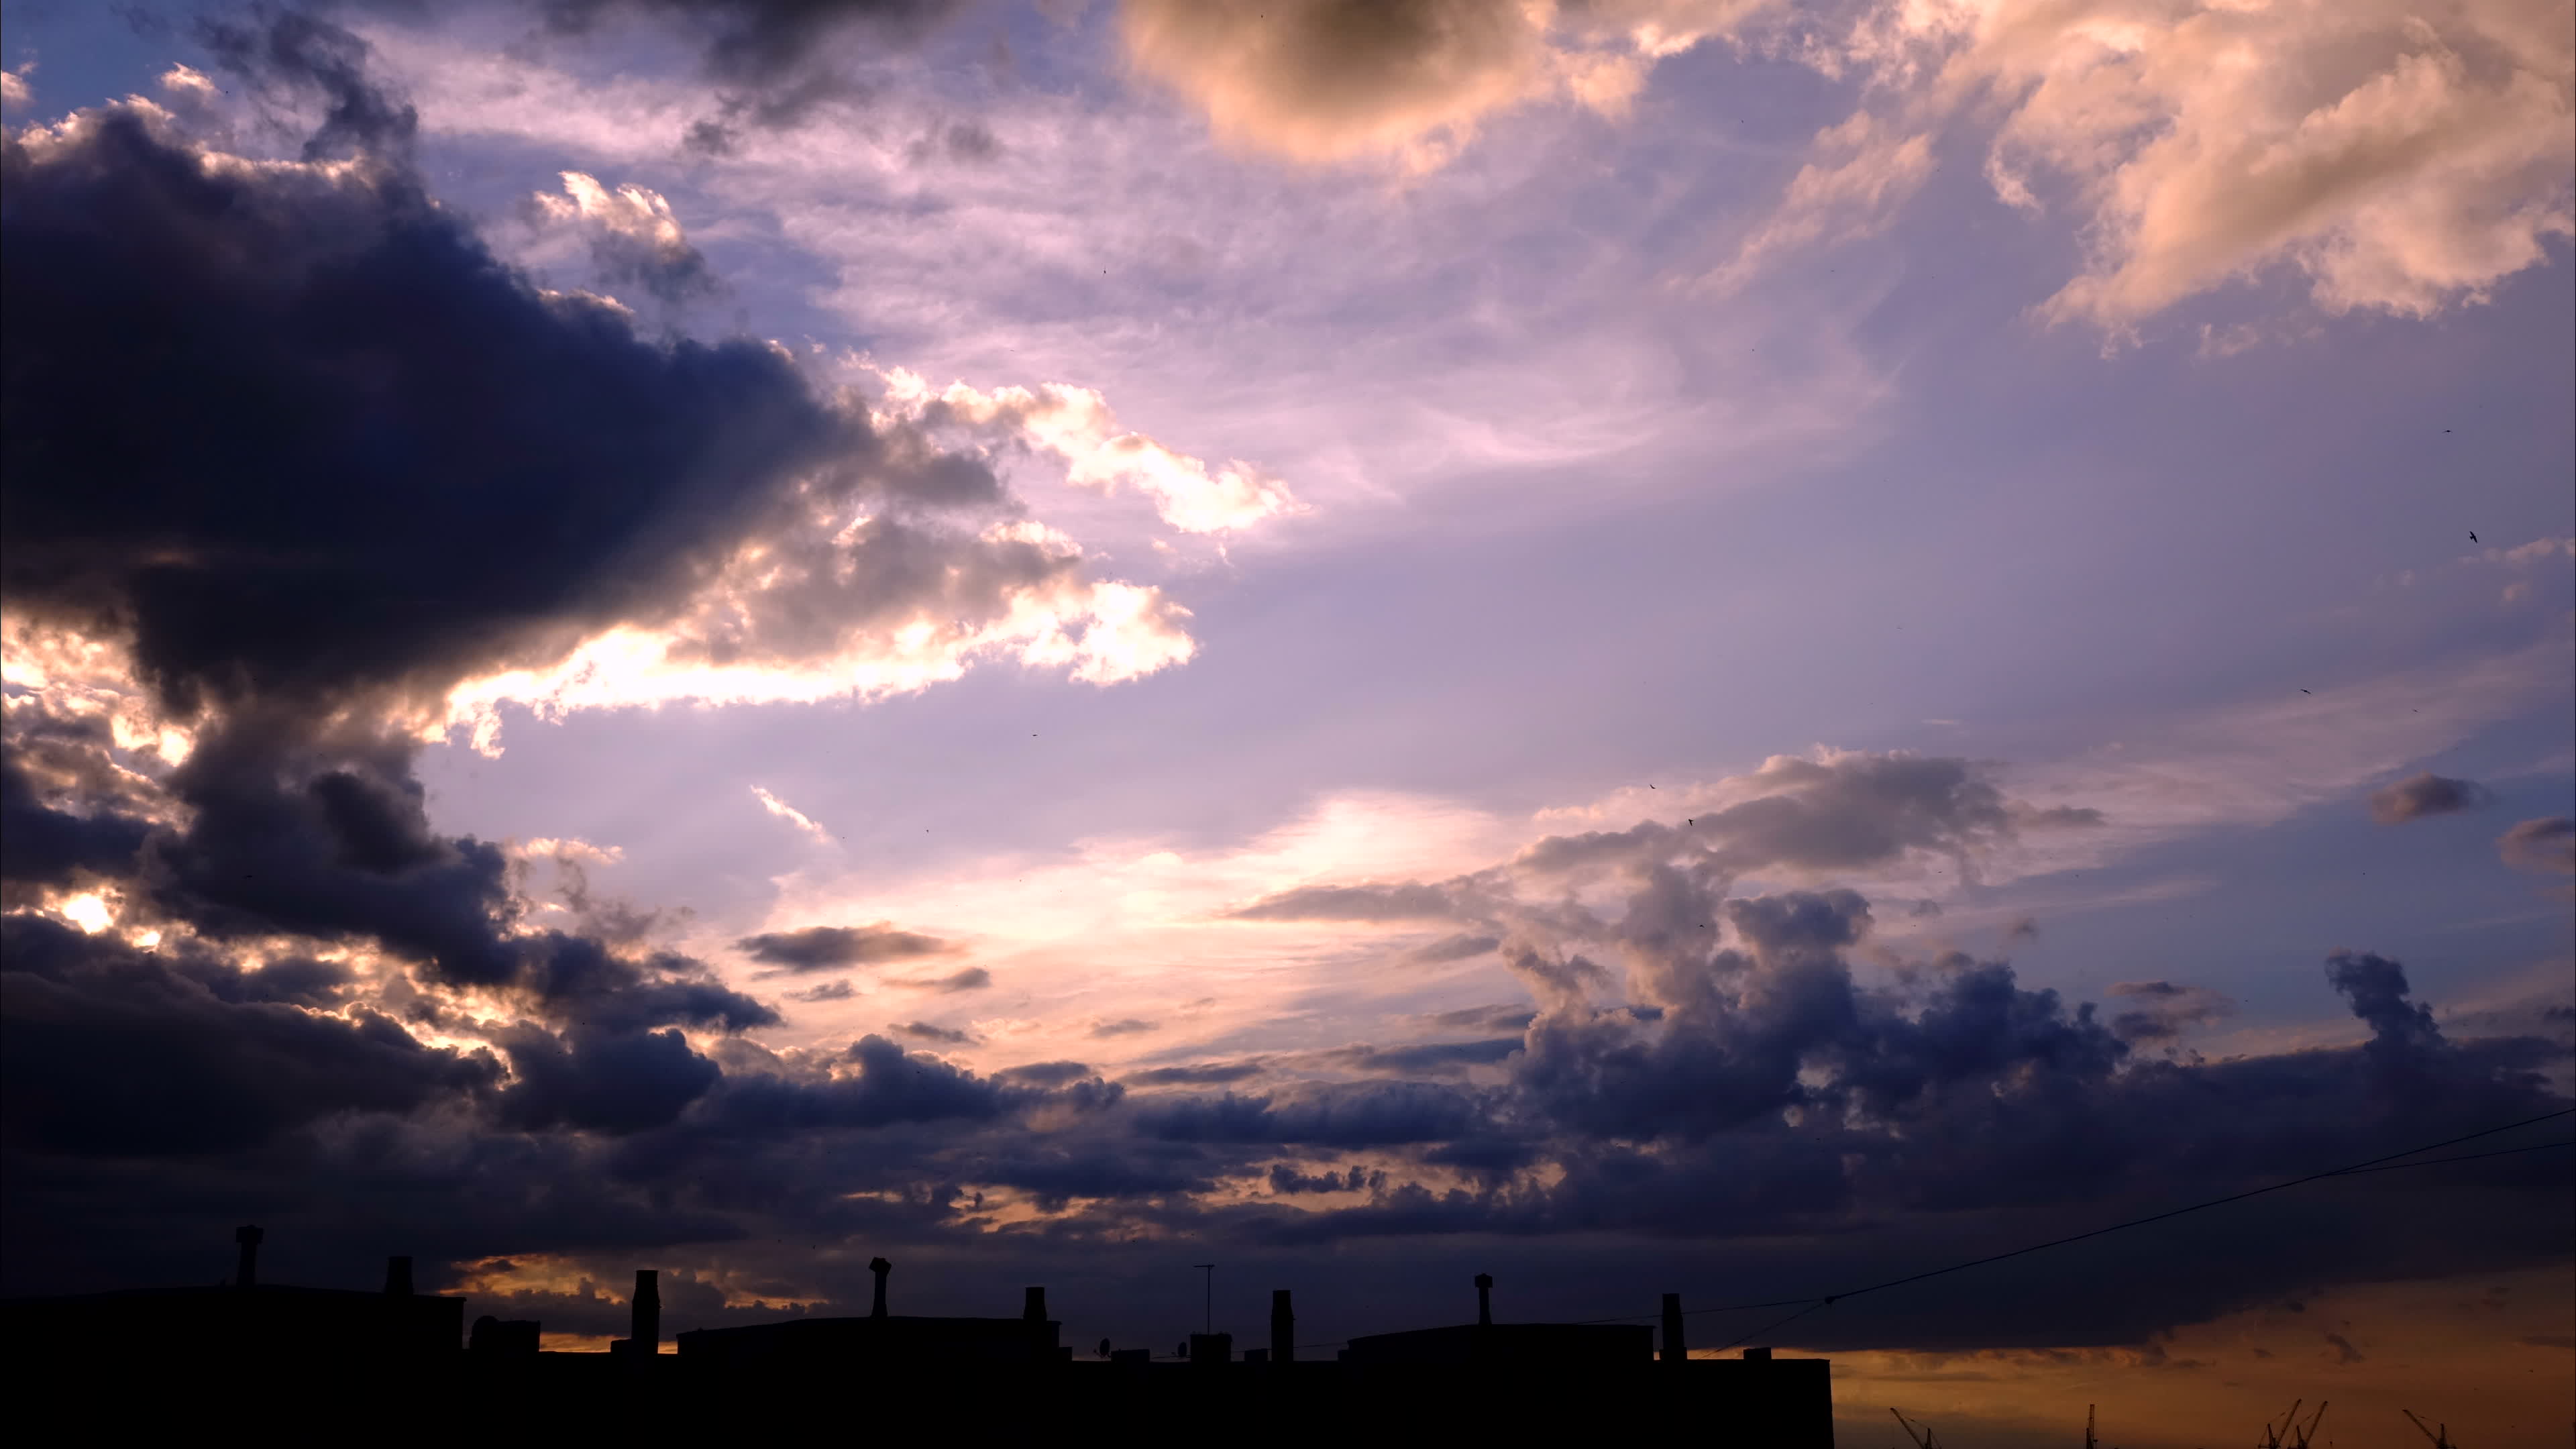 Trong bức hình này, bạn sẽ thấy một khung cảnh đầy cảm hứng với mây đen và bầu trời xanh hồng. Điều này tạo ra một bầu không khí đầy bất ngờ và kích thích, mời gọi bạn khám phá thêm về bức hình này.